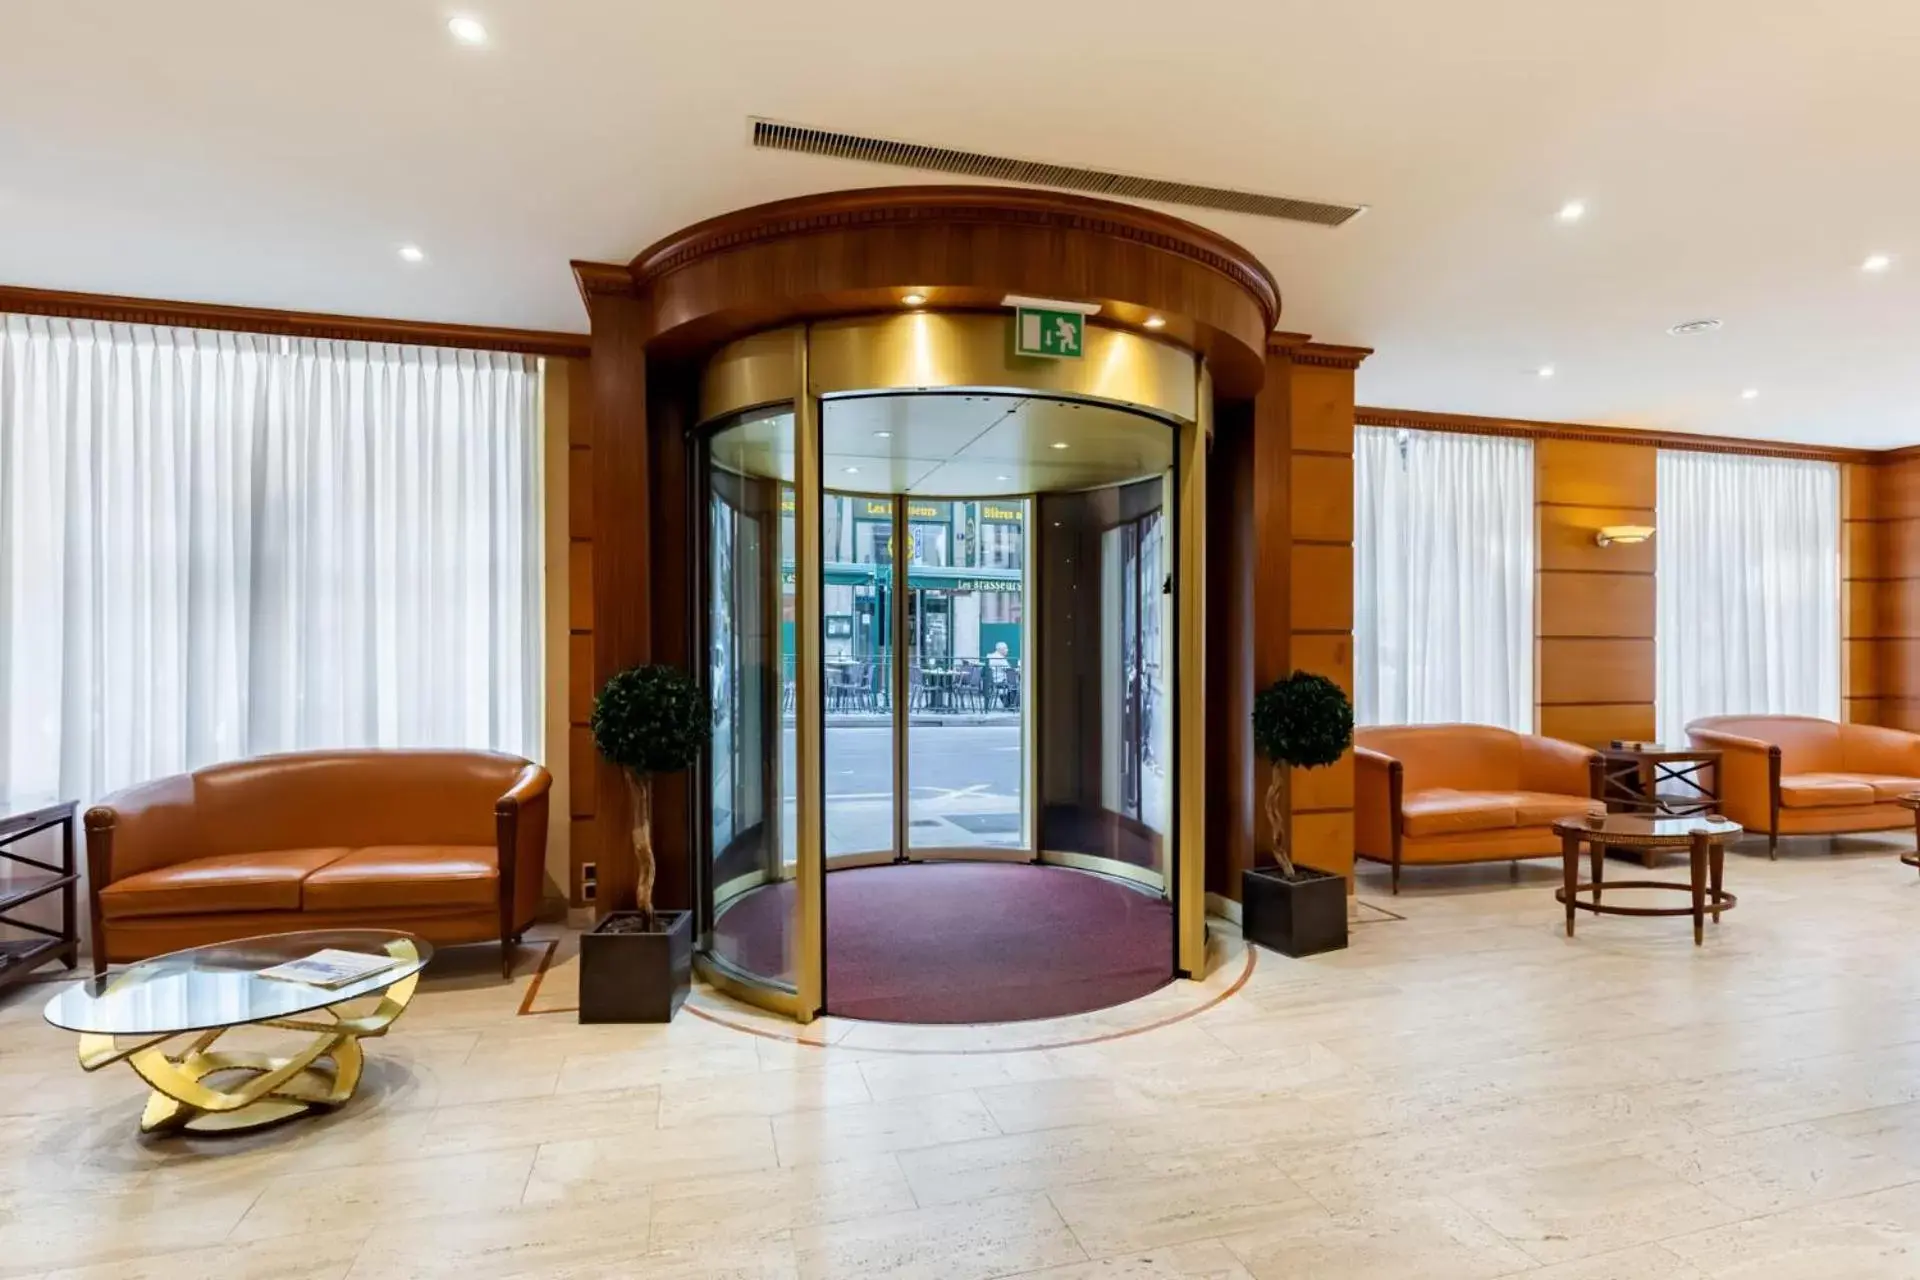 Lobby or reception, Lobby/Reception in Hotel Strasbourg